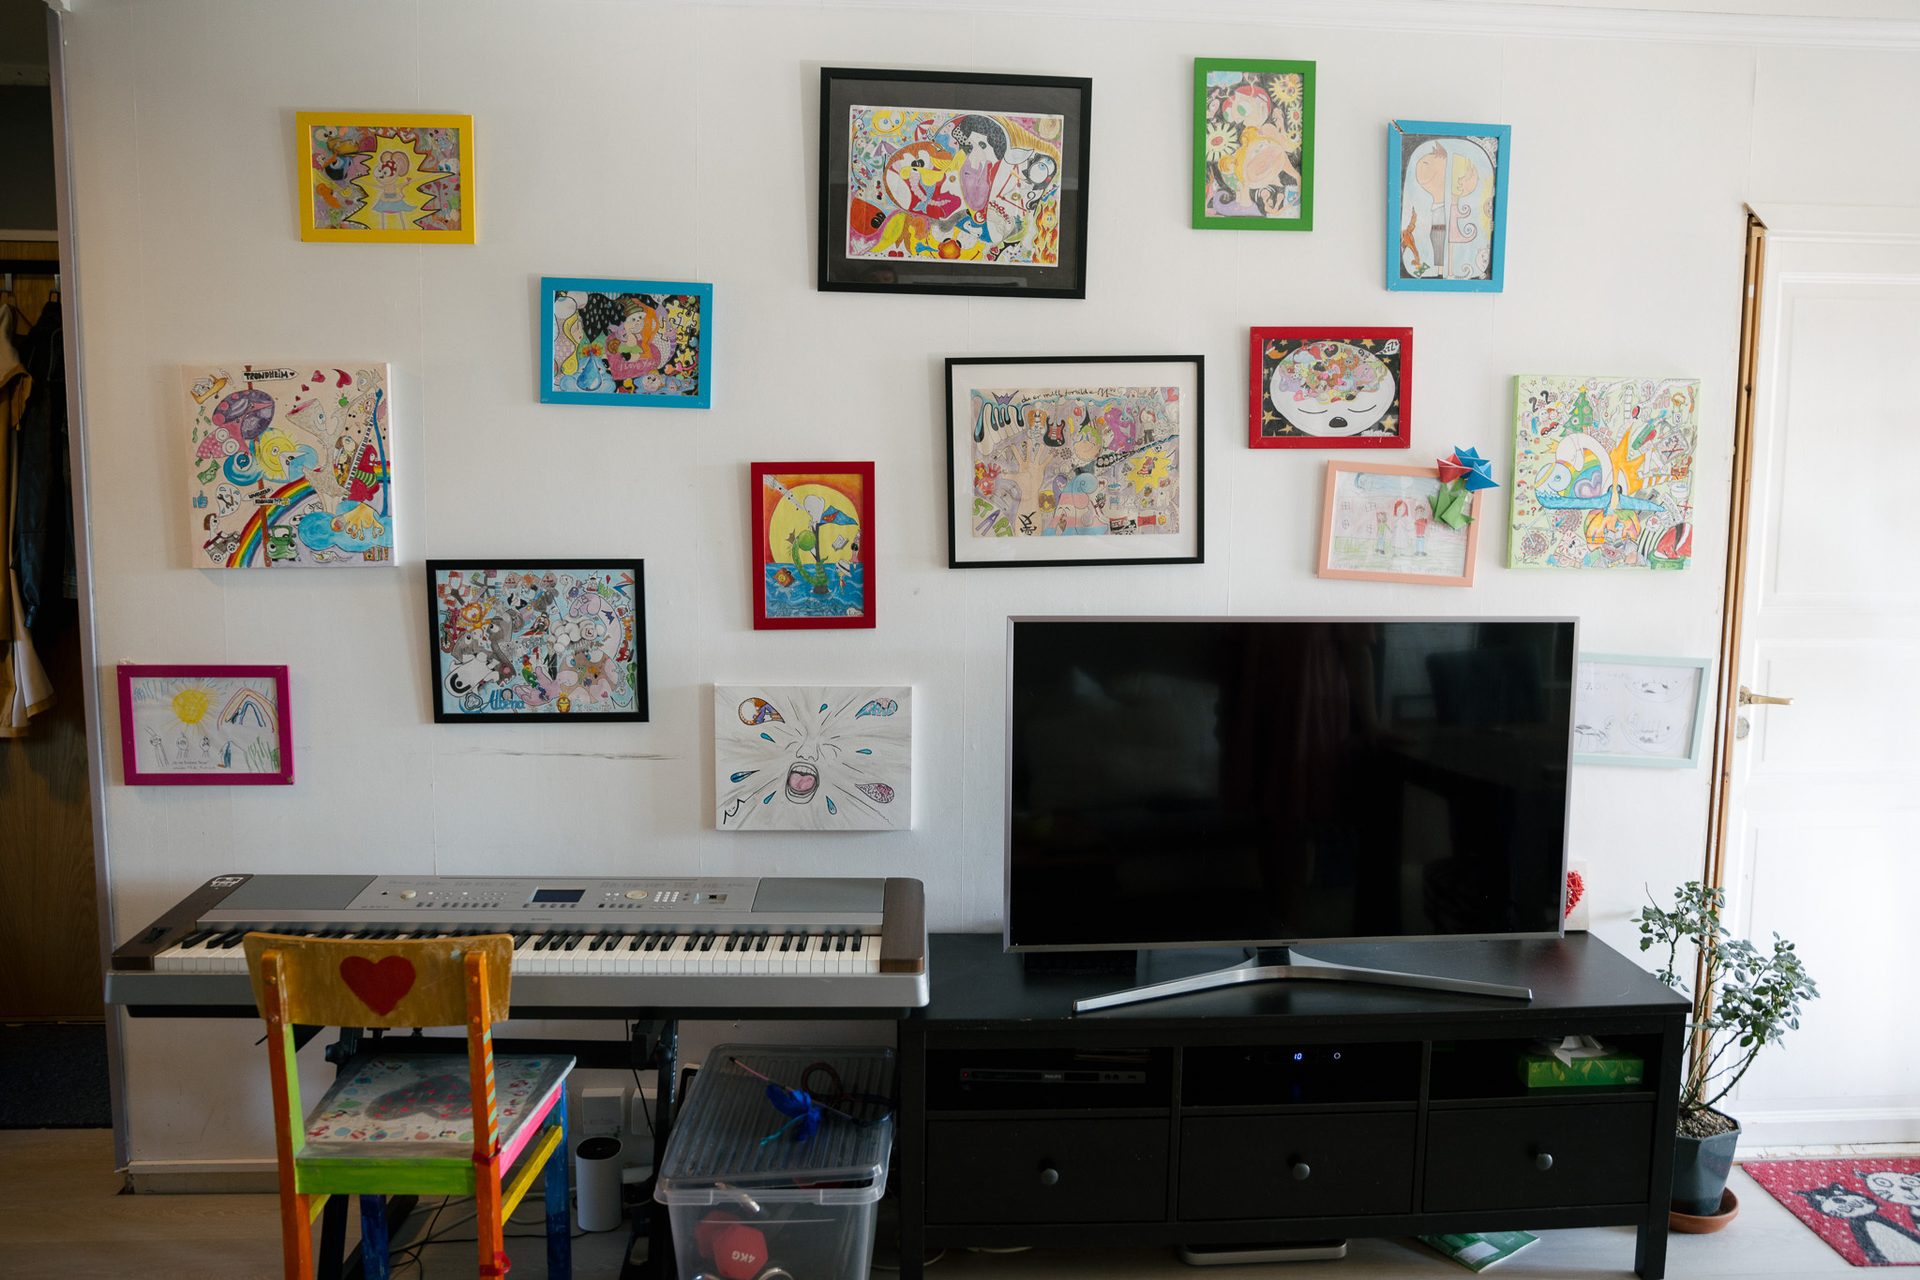 en hvit vegg i en leilighet med en rekke fargerike bilder innrammet i ulike farger. I forgrunnen er det et tv-bord, en TV, en farget stol og et gr&#xE5;tt keyboard.